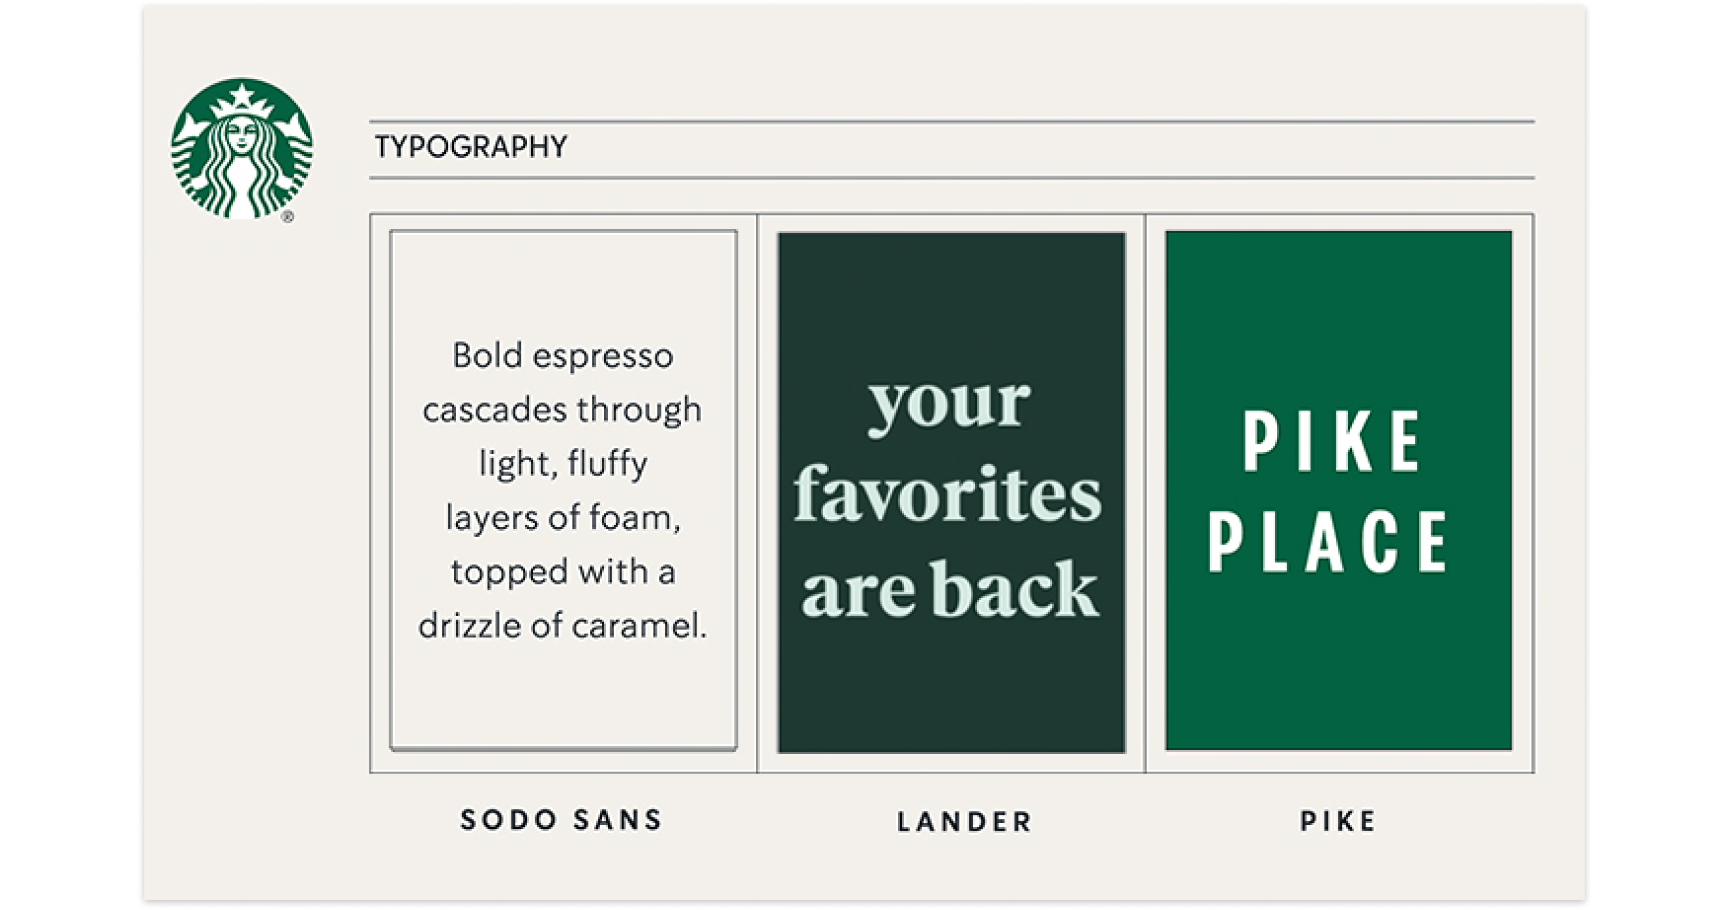 Typography - Starbucks example